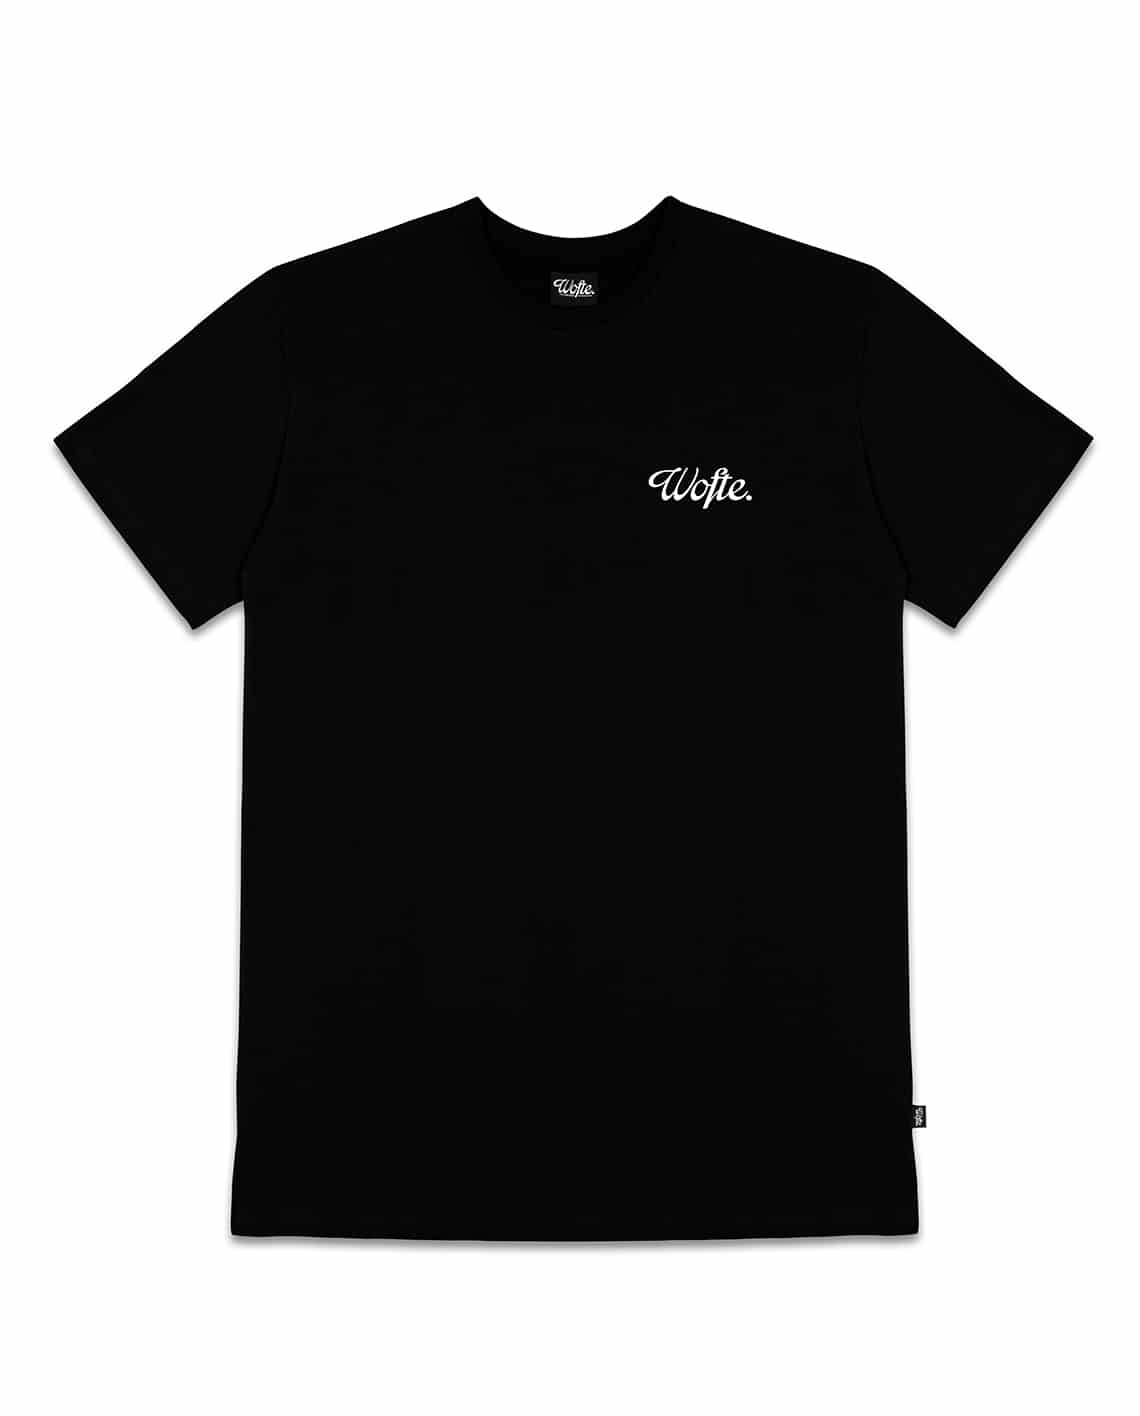 Wofte Minimal Black T Shirt - XXL